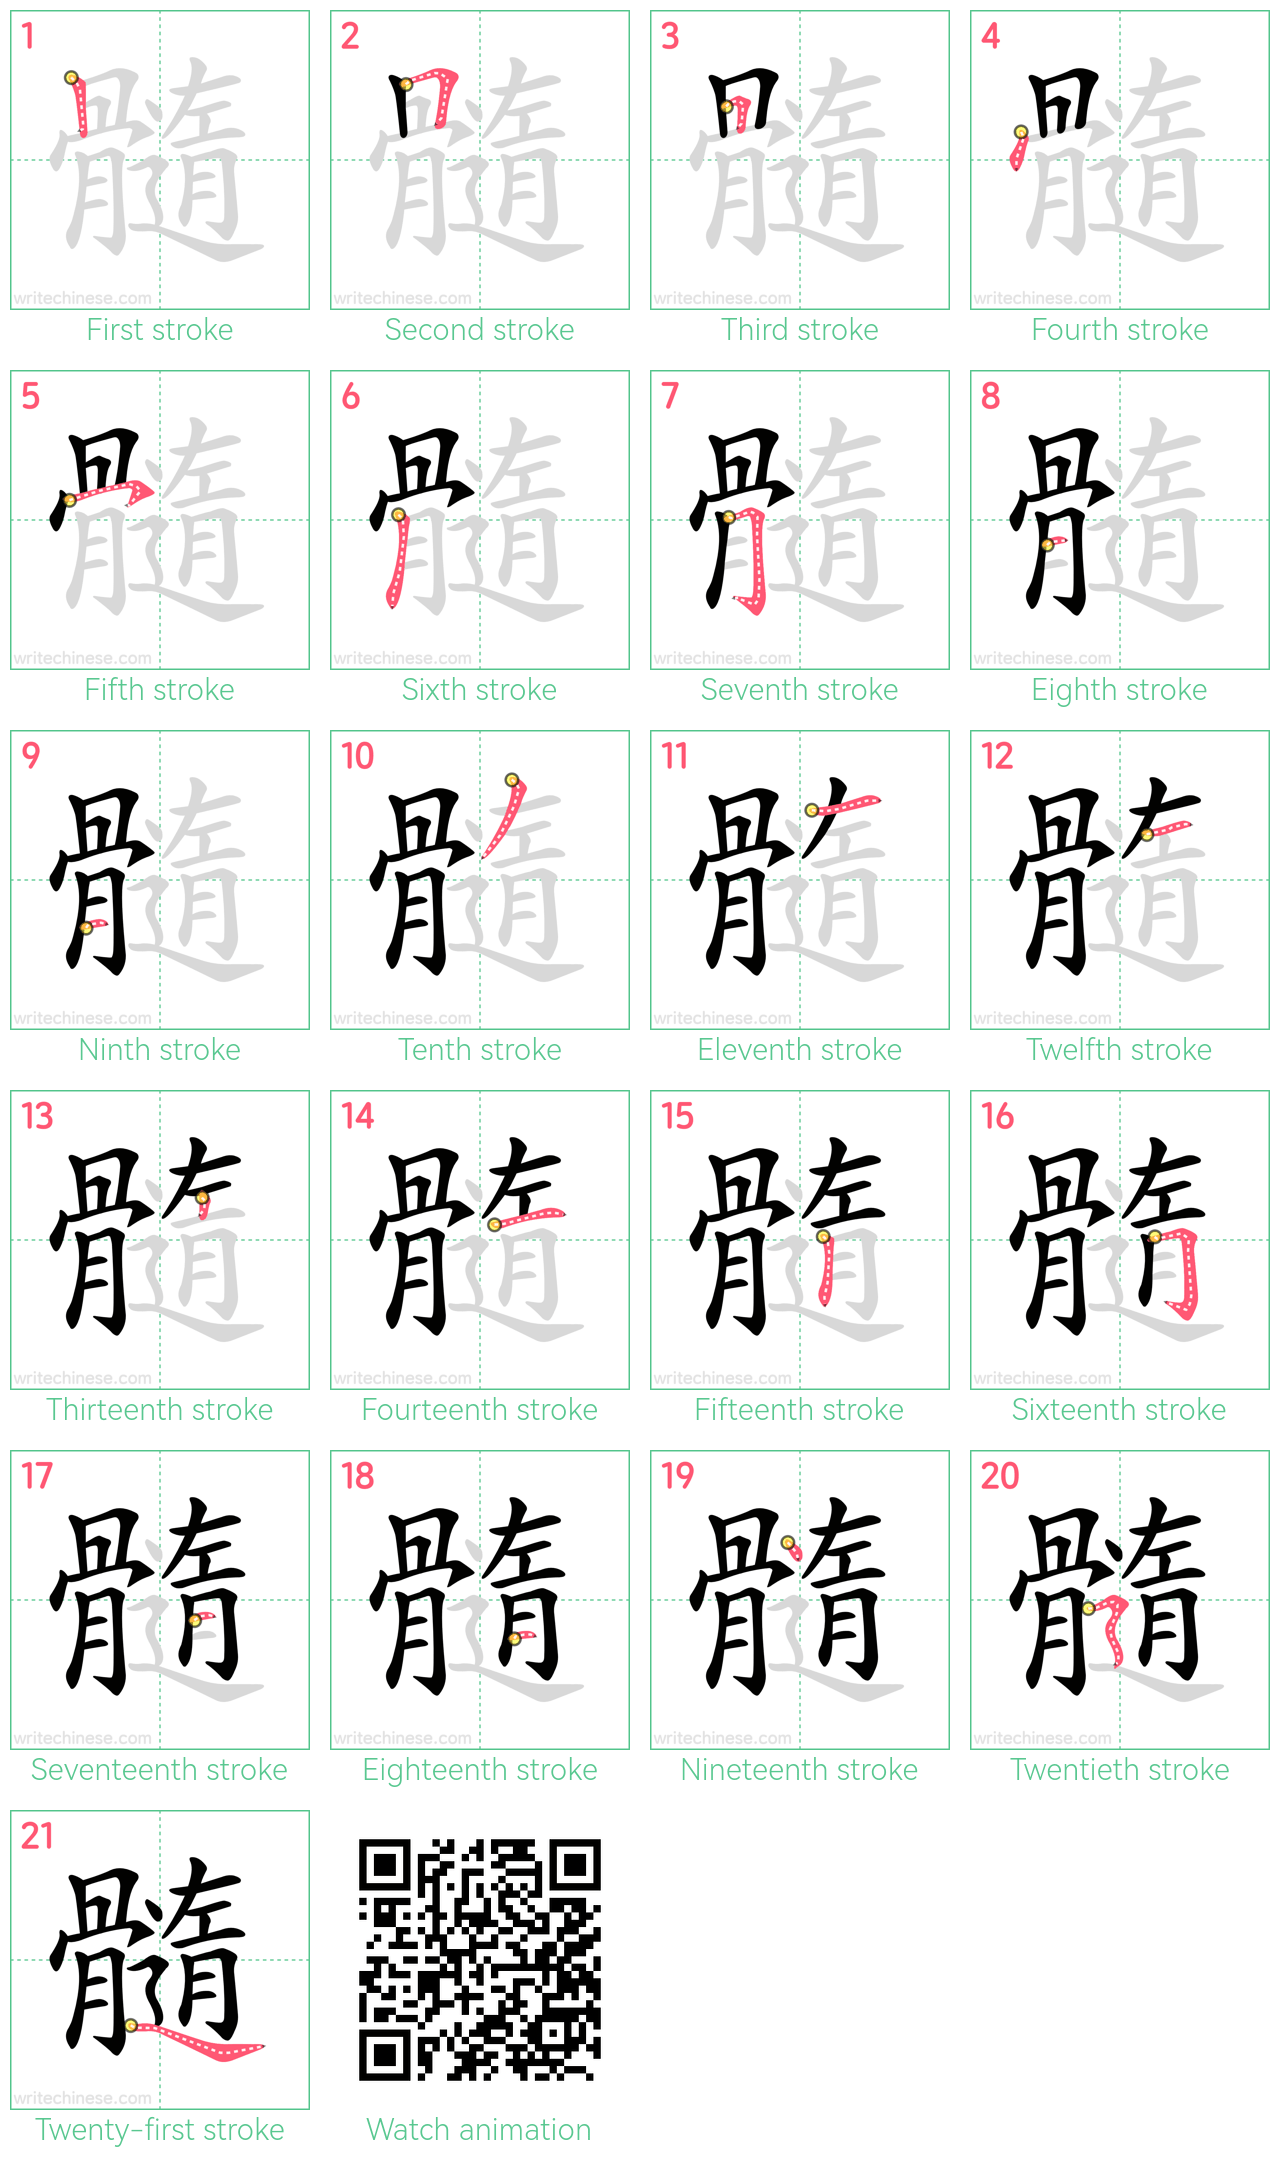 髓 step-by-step stroke order diagrams